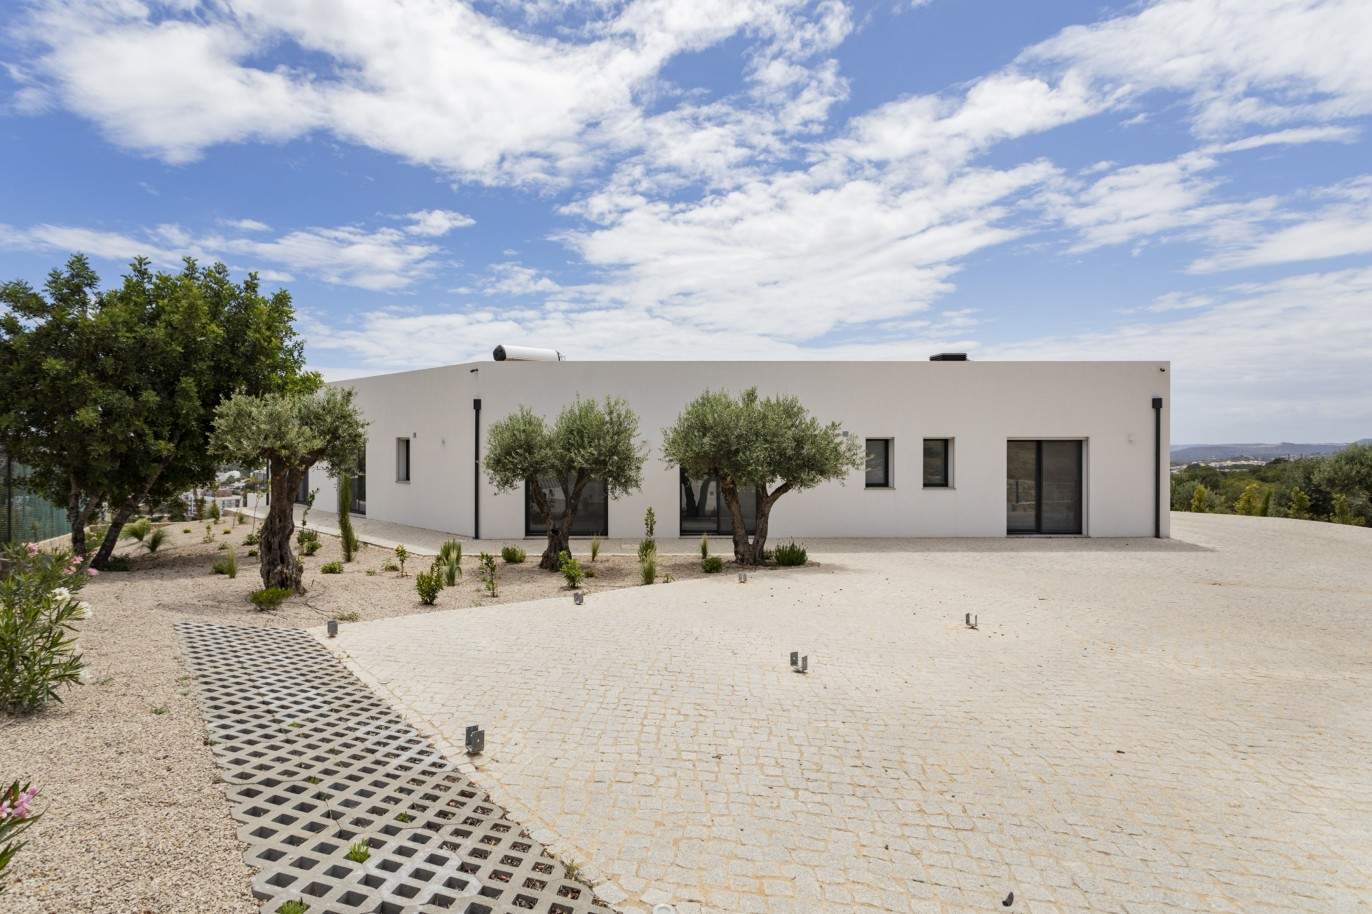 Villa de 4 dormitorios con piscina, en venta en S.Clemente, Loulé, Algarve_201813